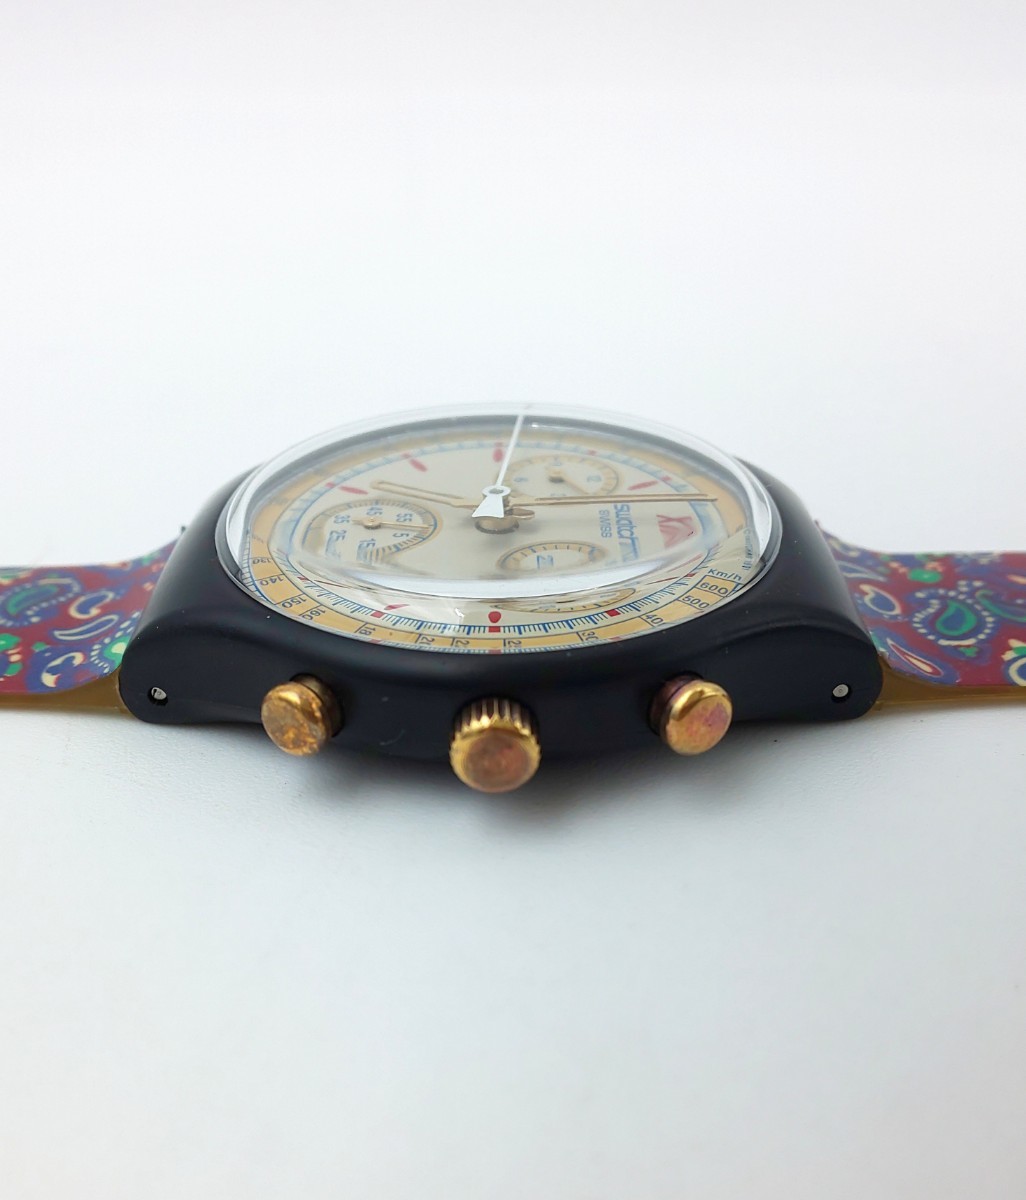  в это время было использовано * SWATCH CHRONO Swatch Chrono Vintage черный × рисунок *SWISS MADE хронограф наручные часы .1909